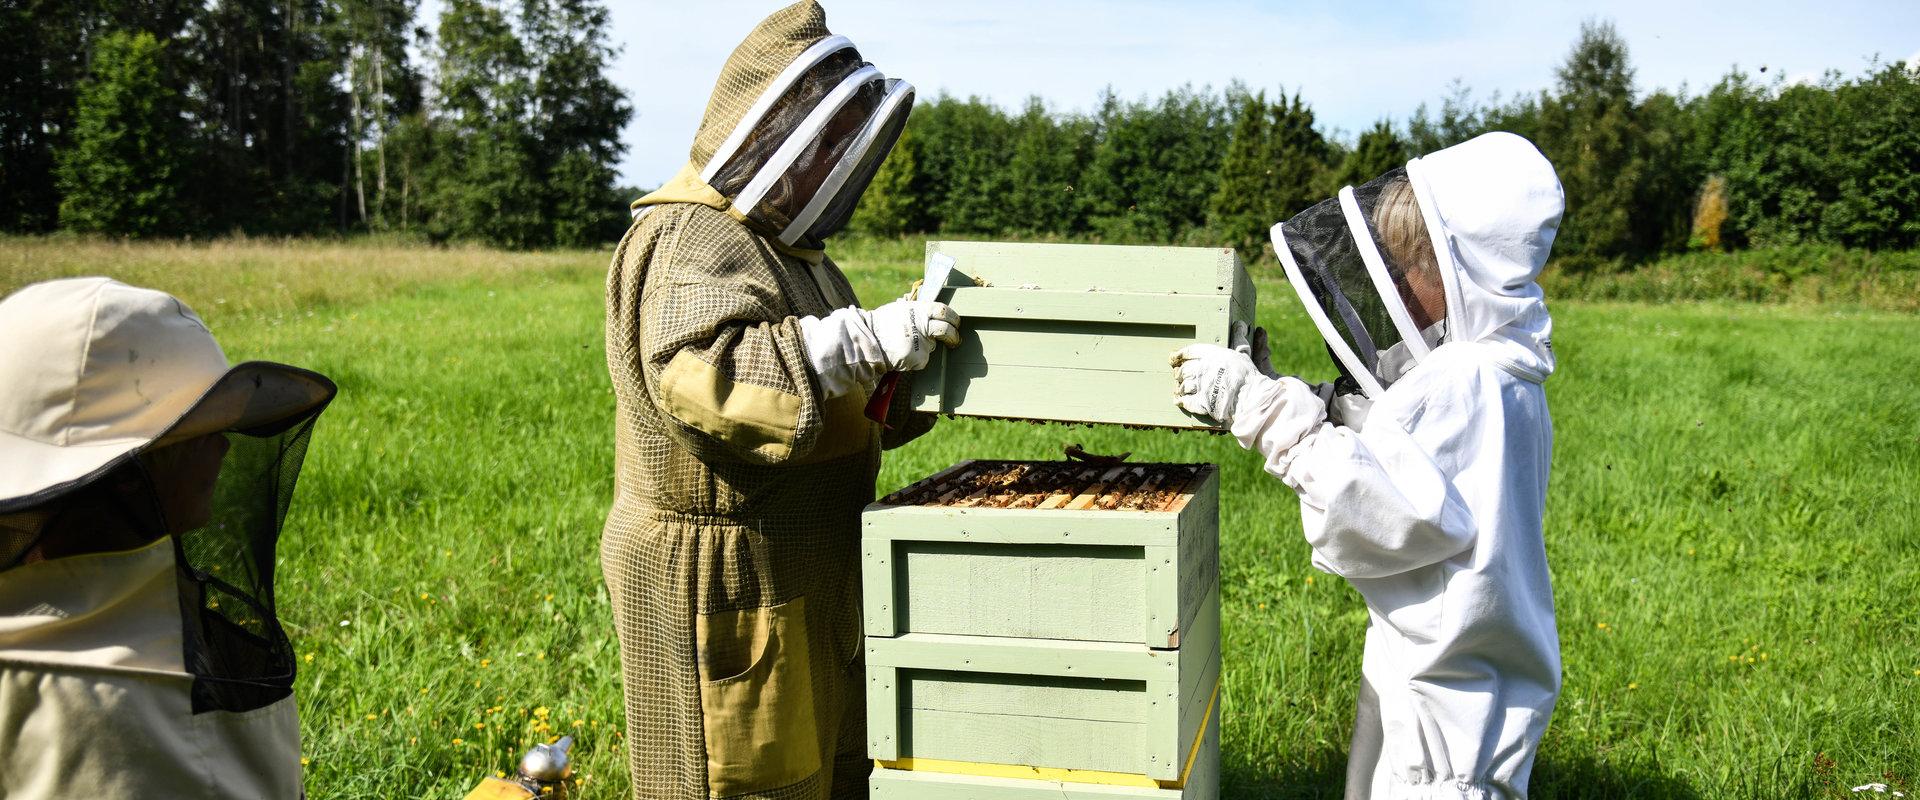 Langsame Momente während eines Besuchs des Bienengartens des Landhofs Tormikadaka